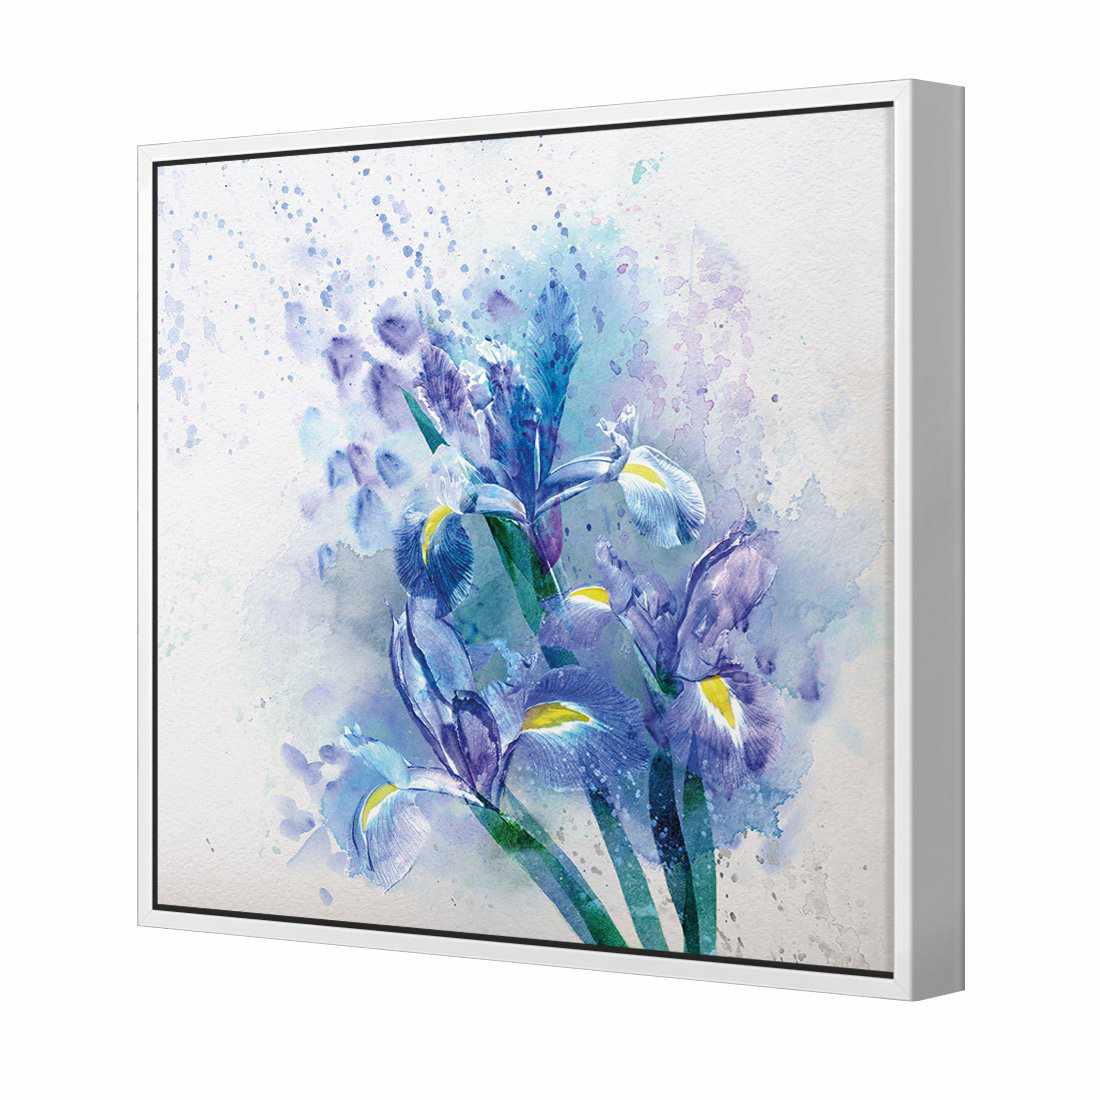 Iris Rain Canvas Art-Canvas-Wall Art Designs-30x30cm-Canvas - White Frame-Wall Art Designs